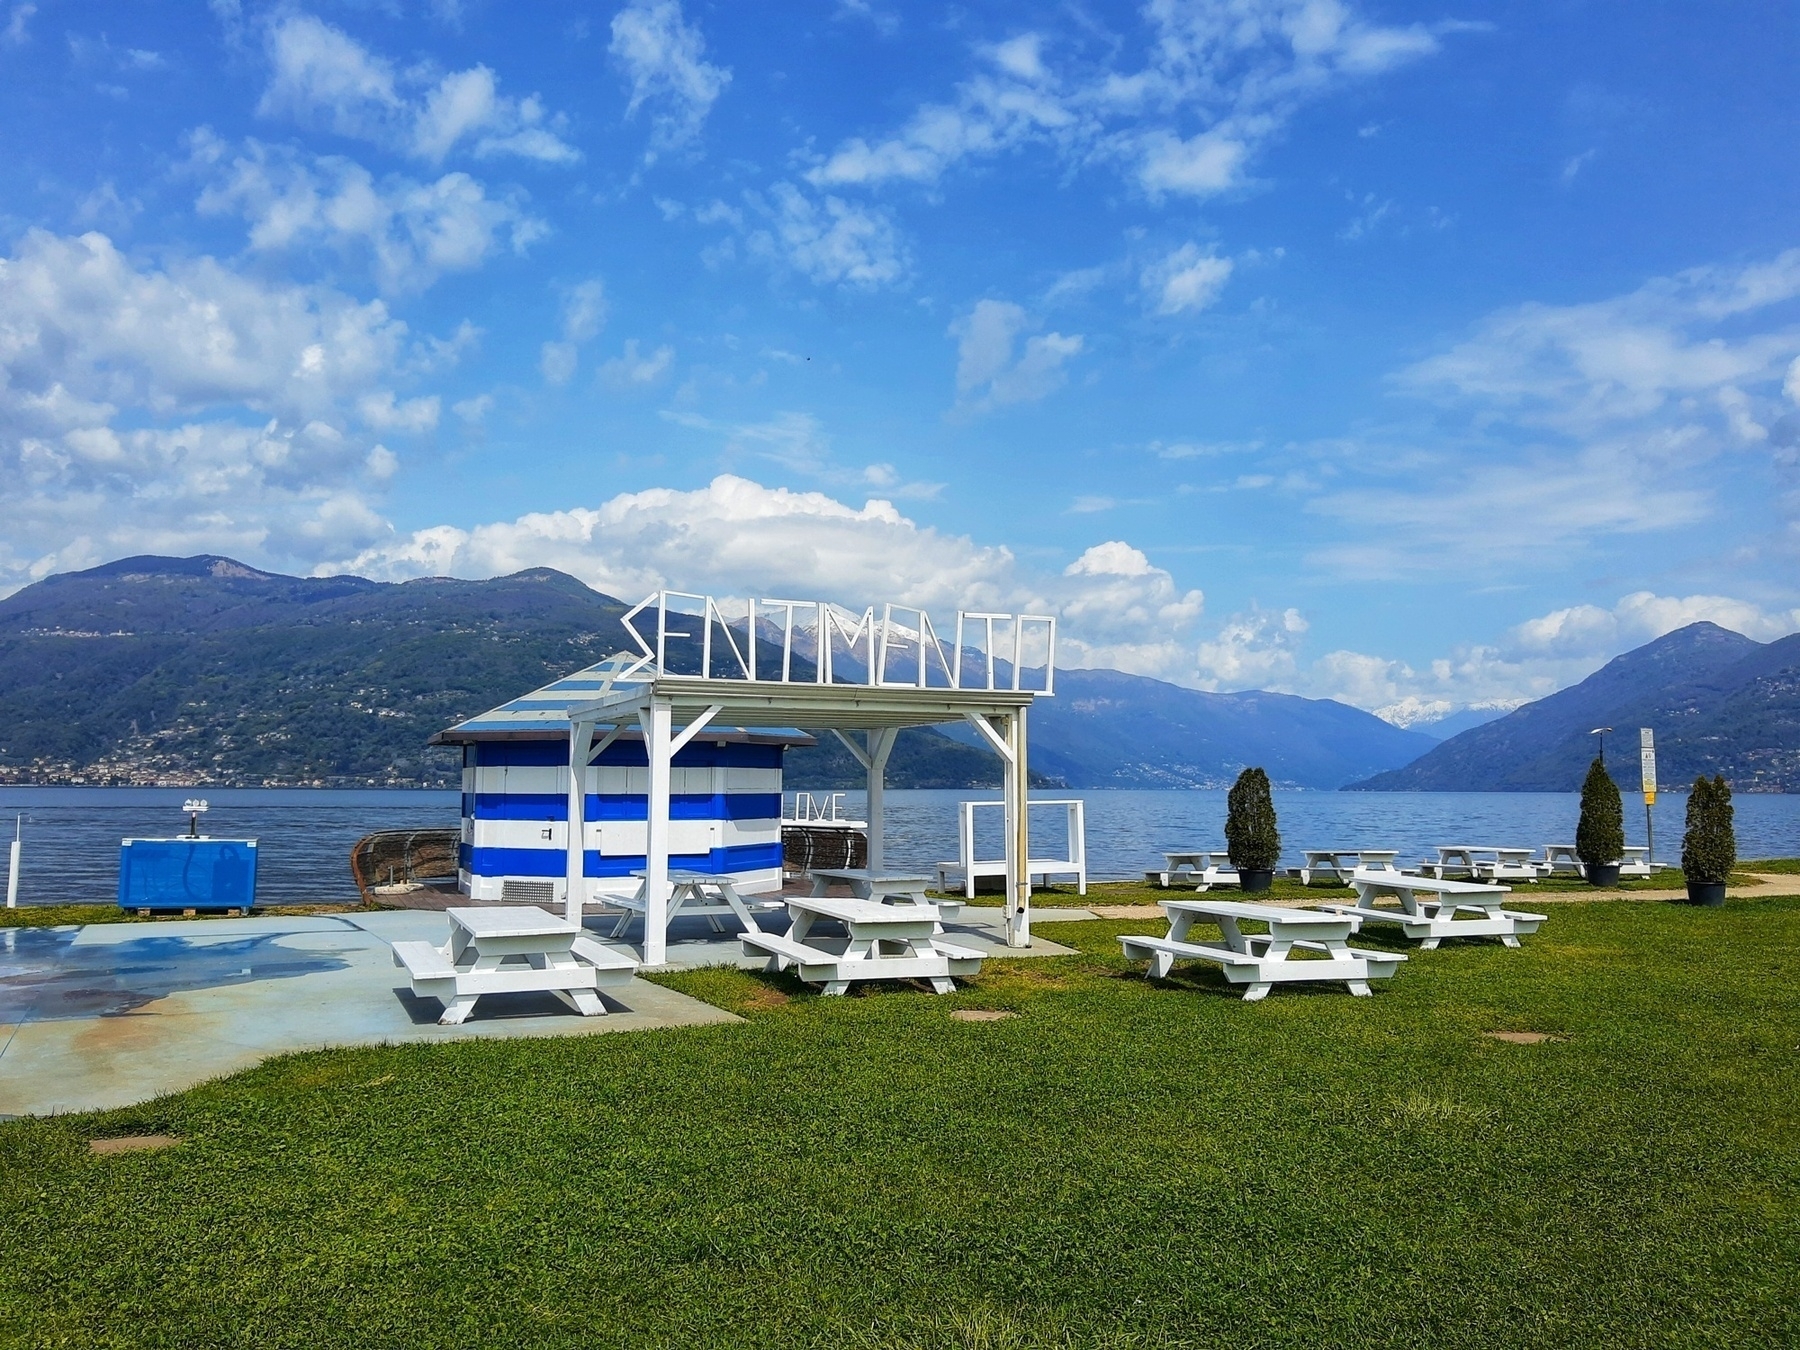 Chiringuito in riva al Lago Maggiore, sopra il locale si vede la scritta Sentimento. Sullo sfondo sono visibili il lago e le montagne.